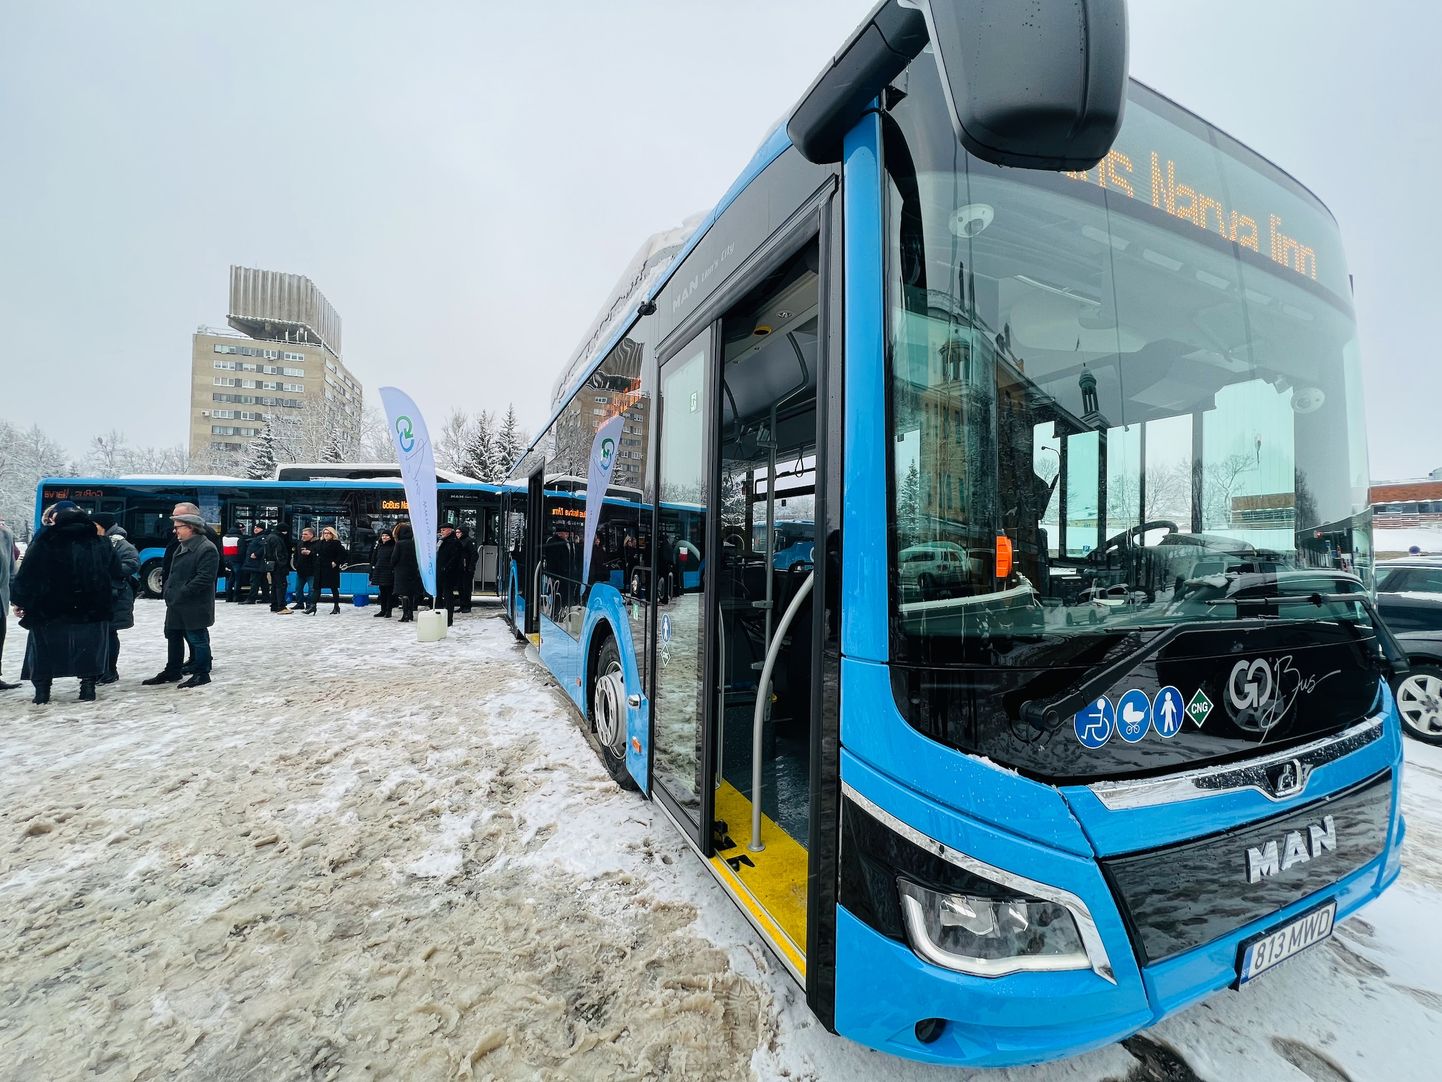 Нарвские городские автобусы переходят на зимнее расписание движения.